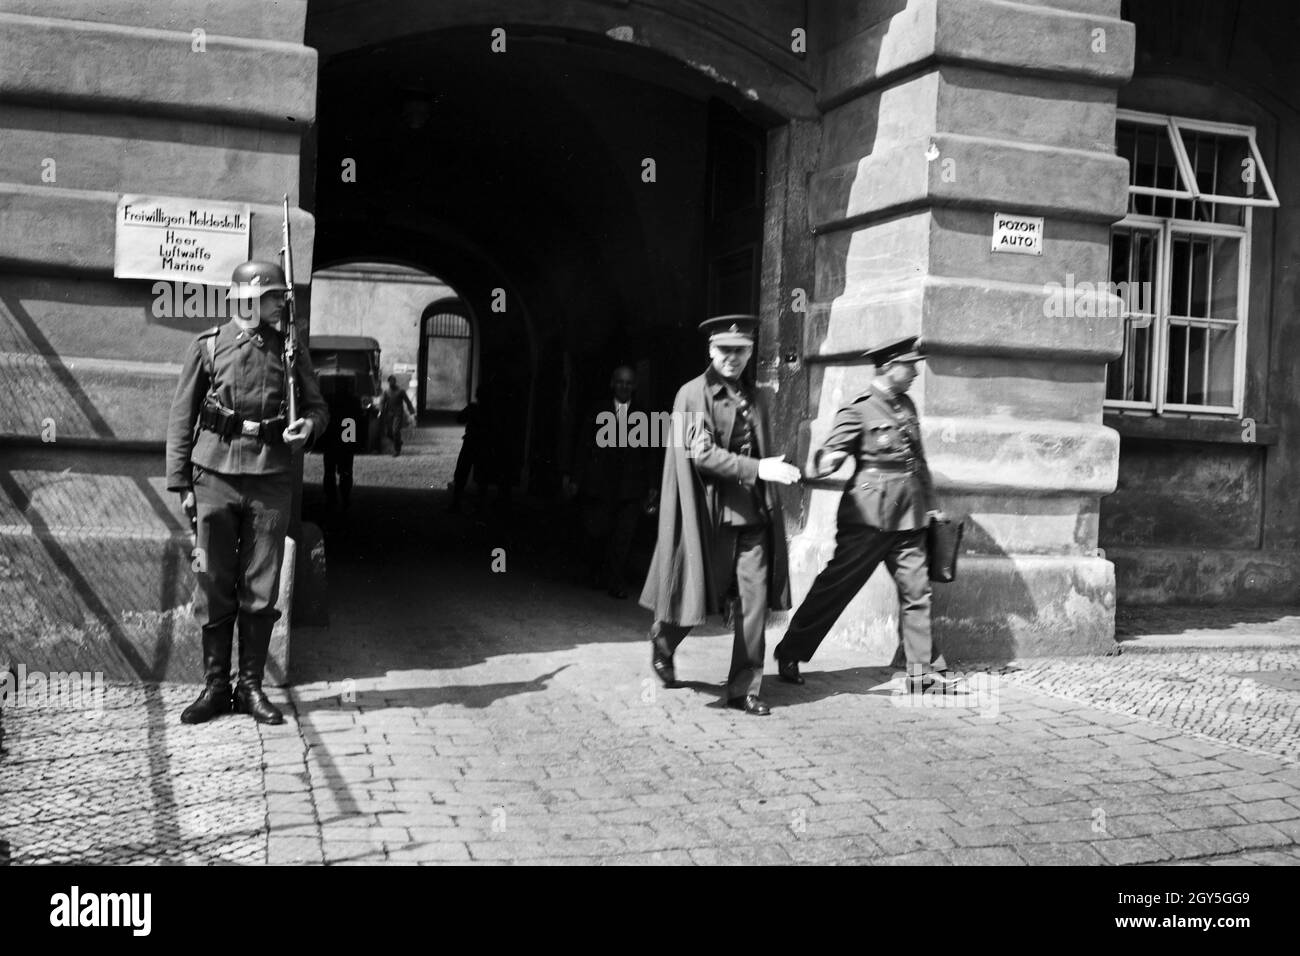 Originalbildunterschrift: Tschechische Offiziere verlassen das frühere Landeskommando des tschechische Heeres in Prag.Heute Kommandantur der deutschen Wehrmacht in Prag, 1930er Jahre. Banque D'Images